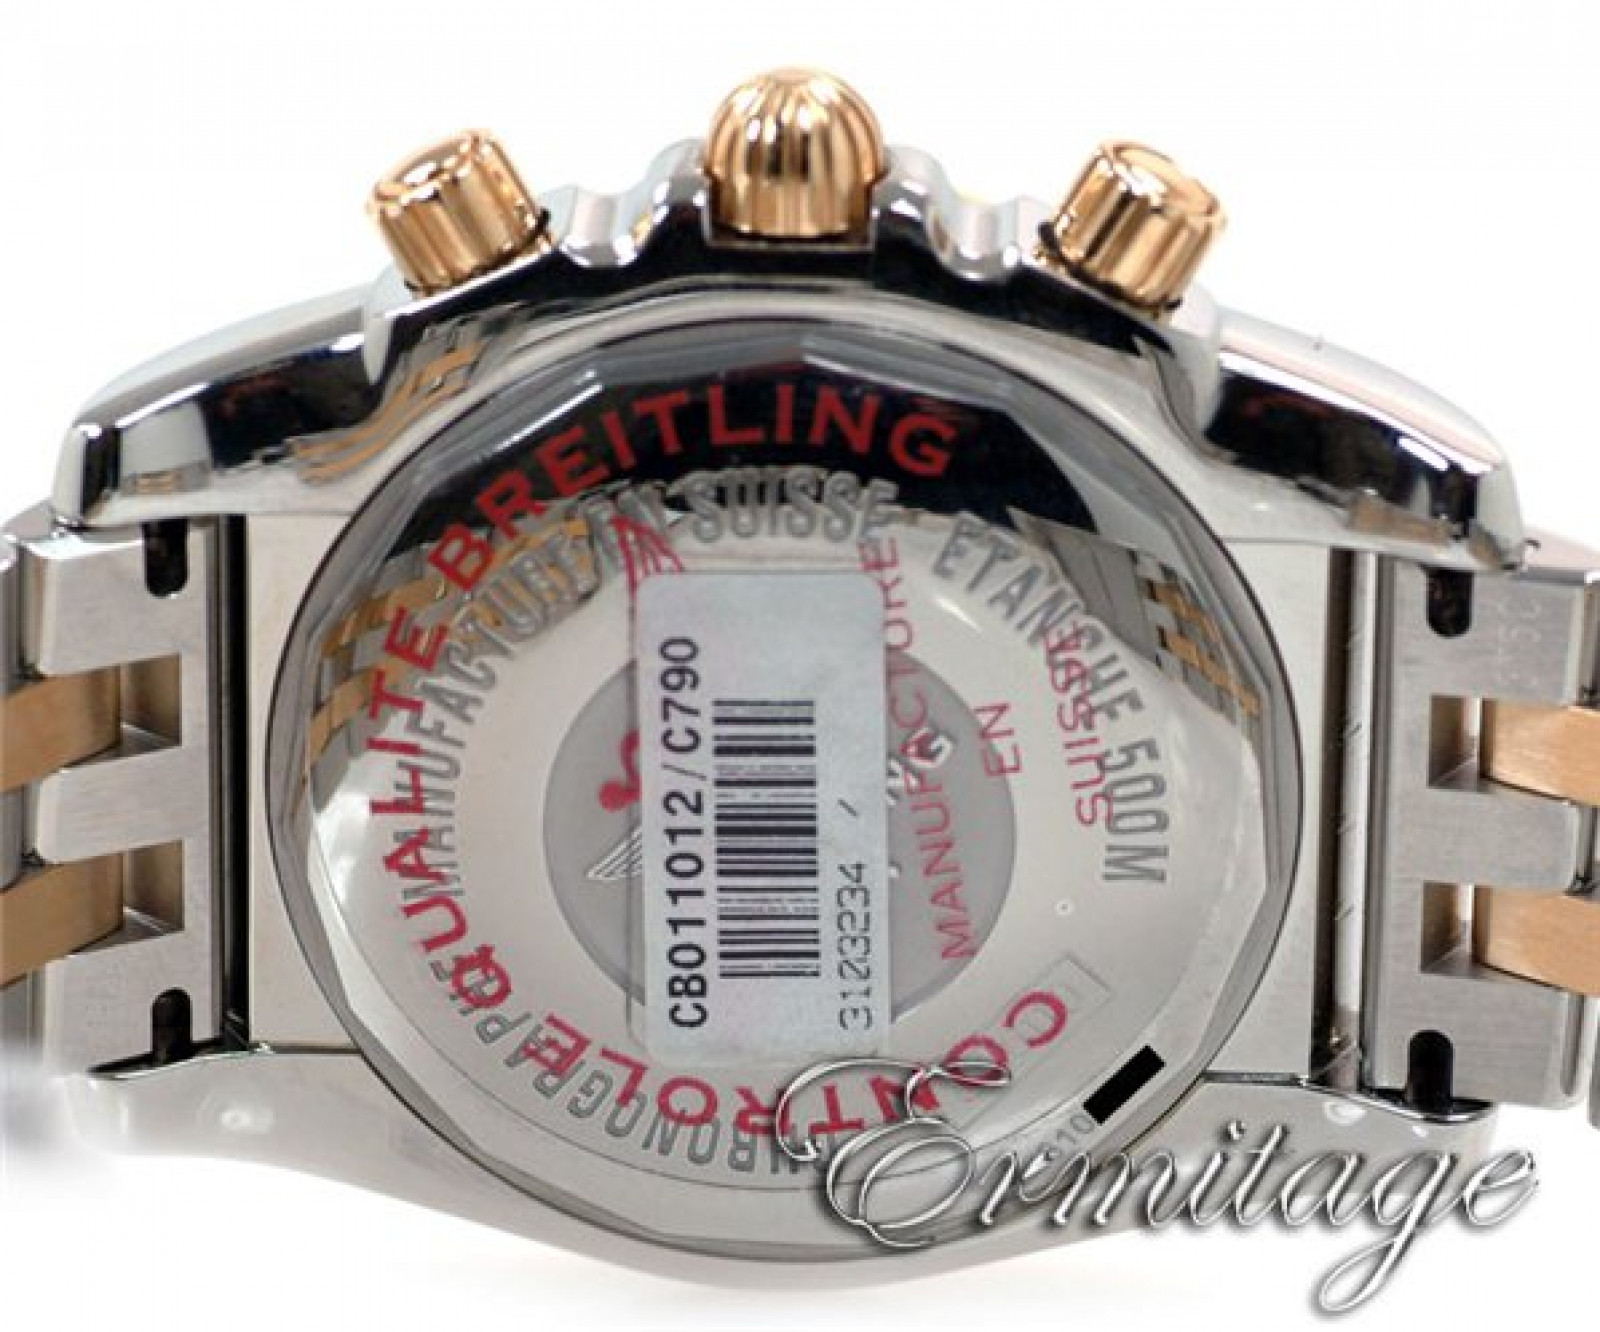 Breitling Chronomat 44 CB011012/C790 Gold & Steel